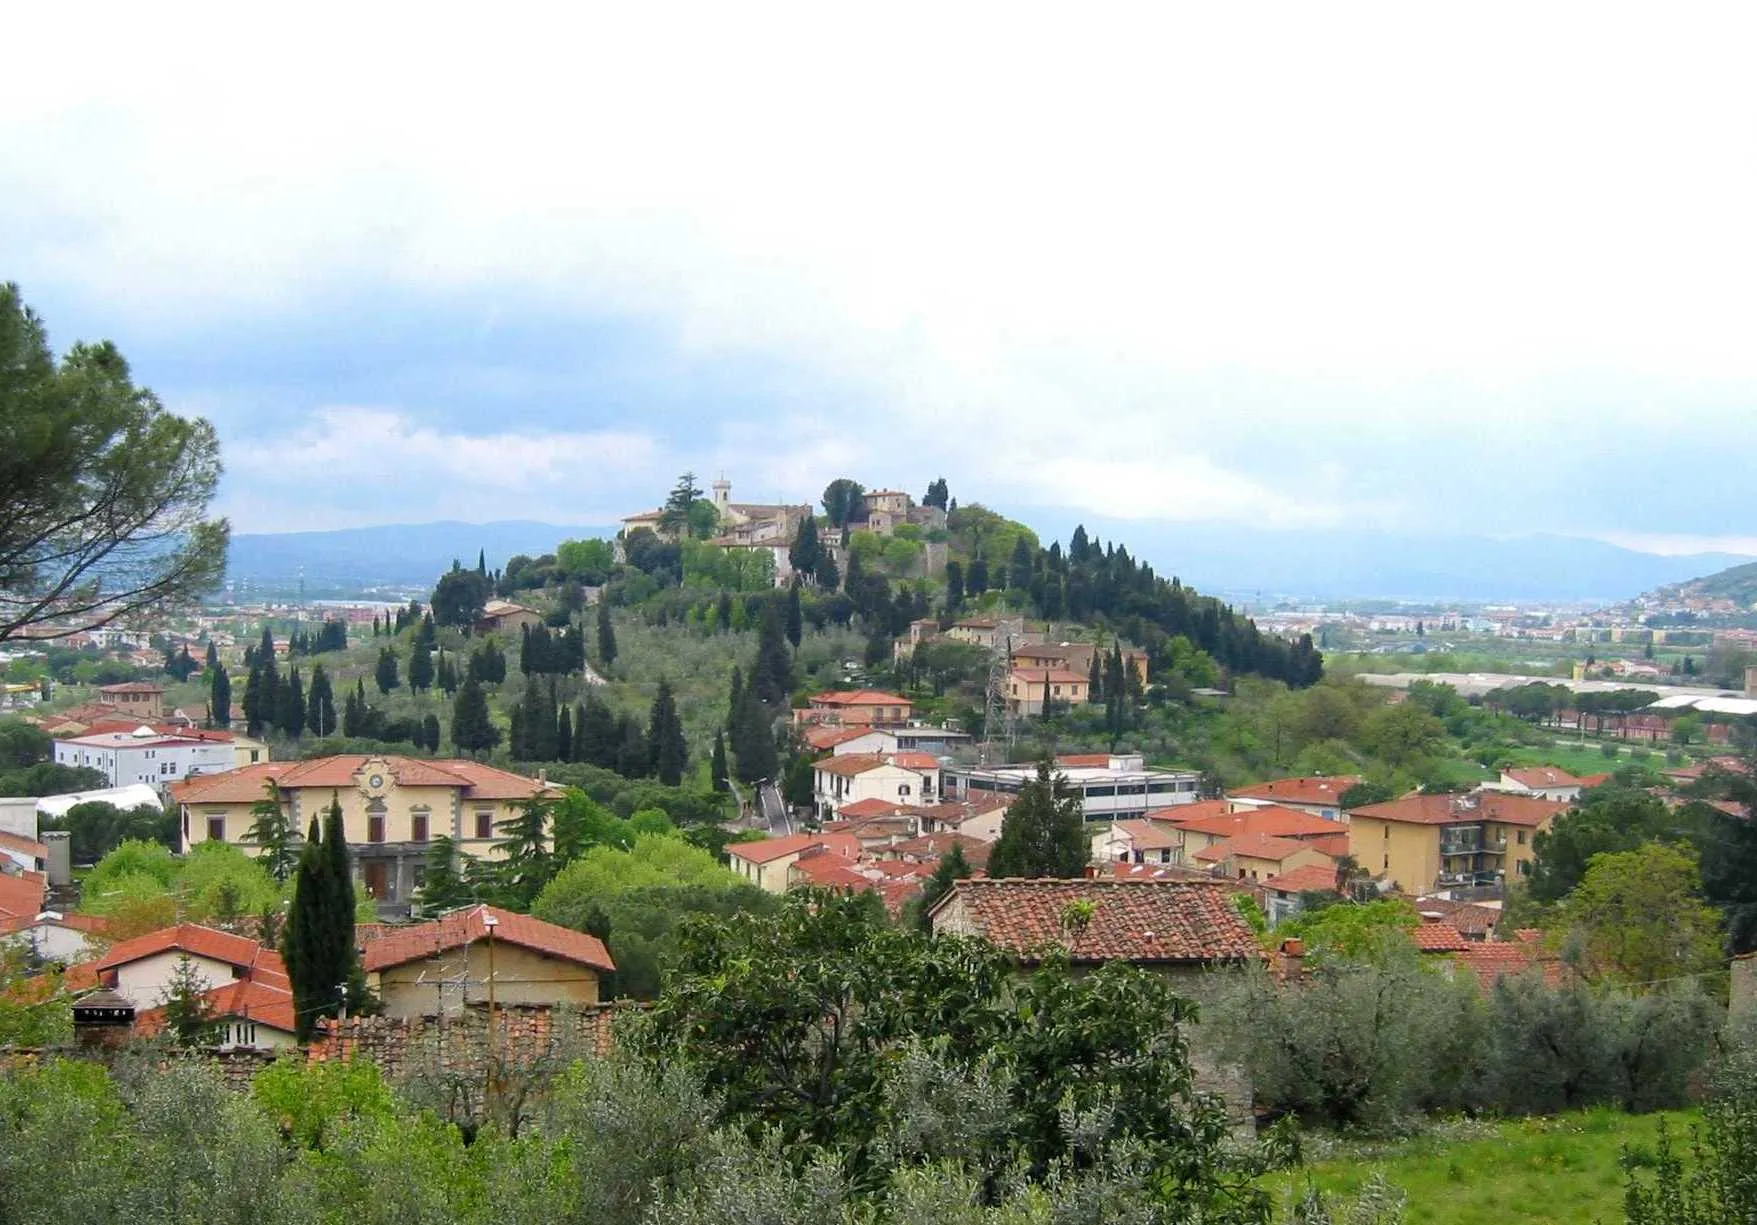 Image of Calenzano